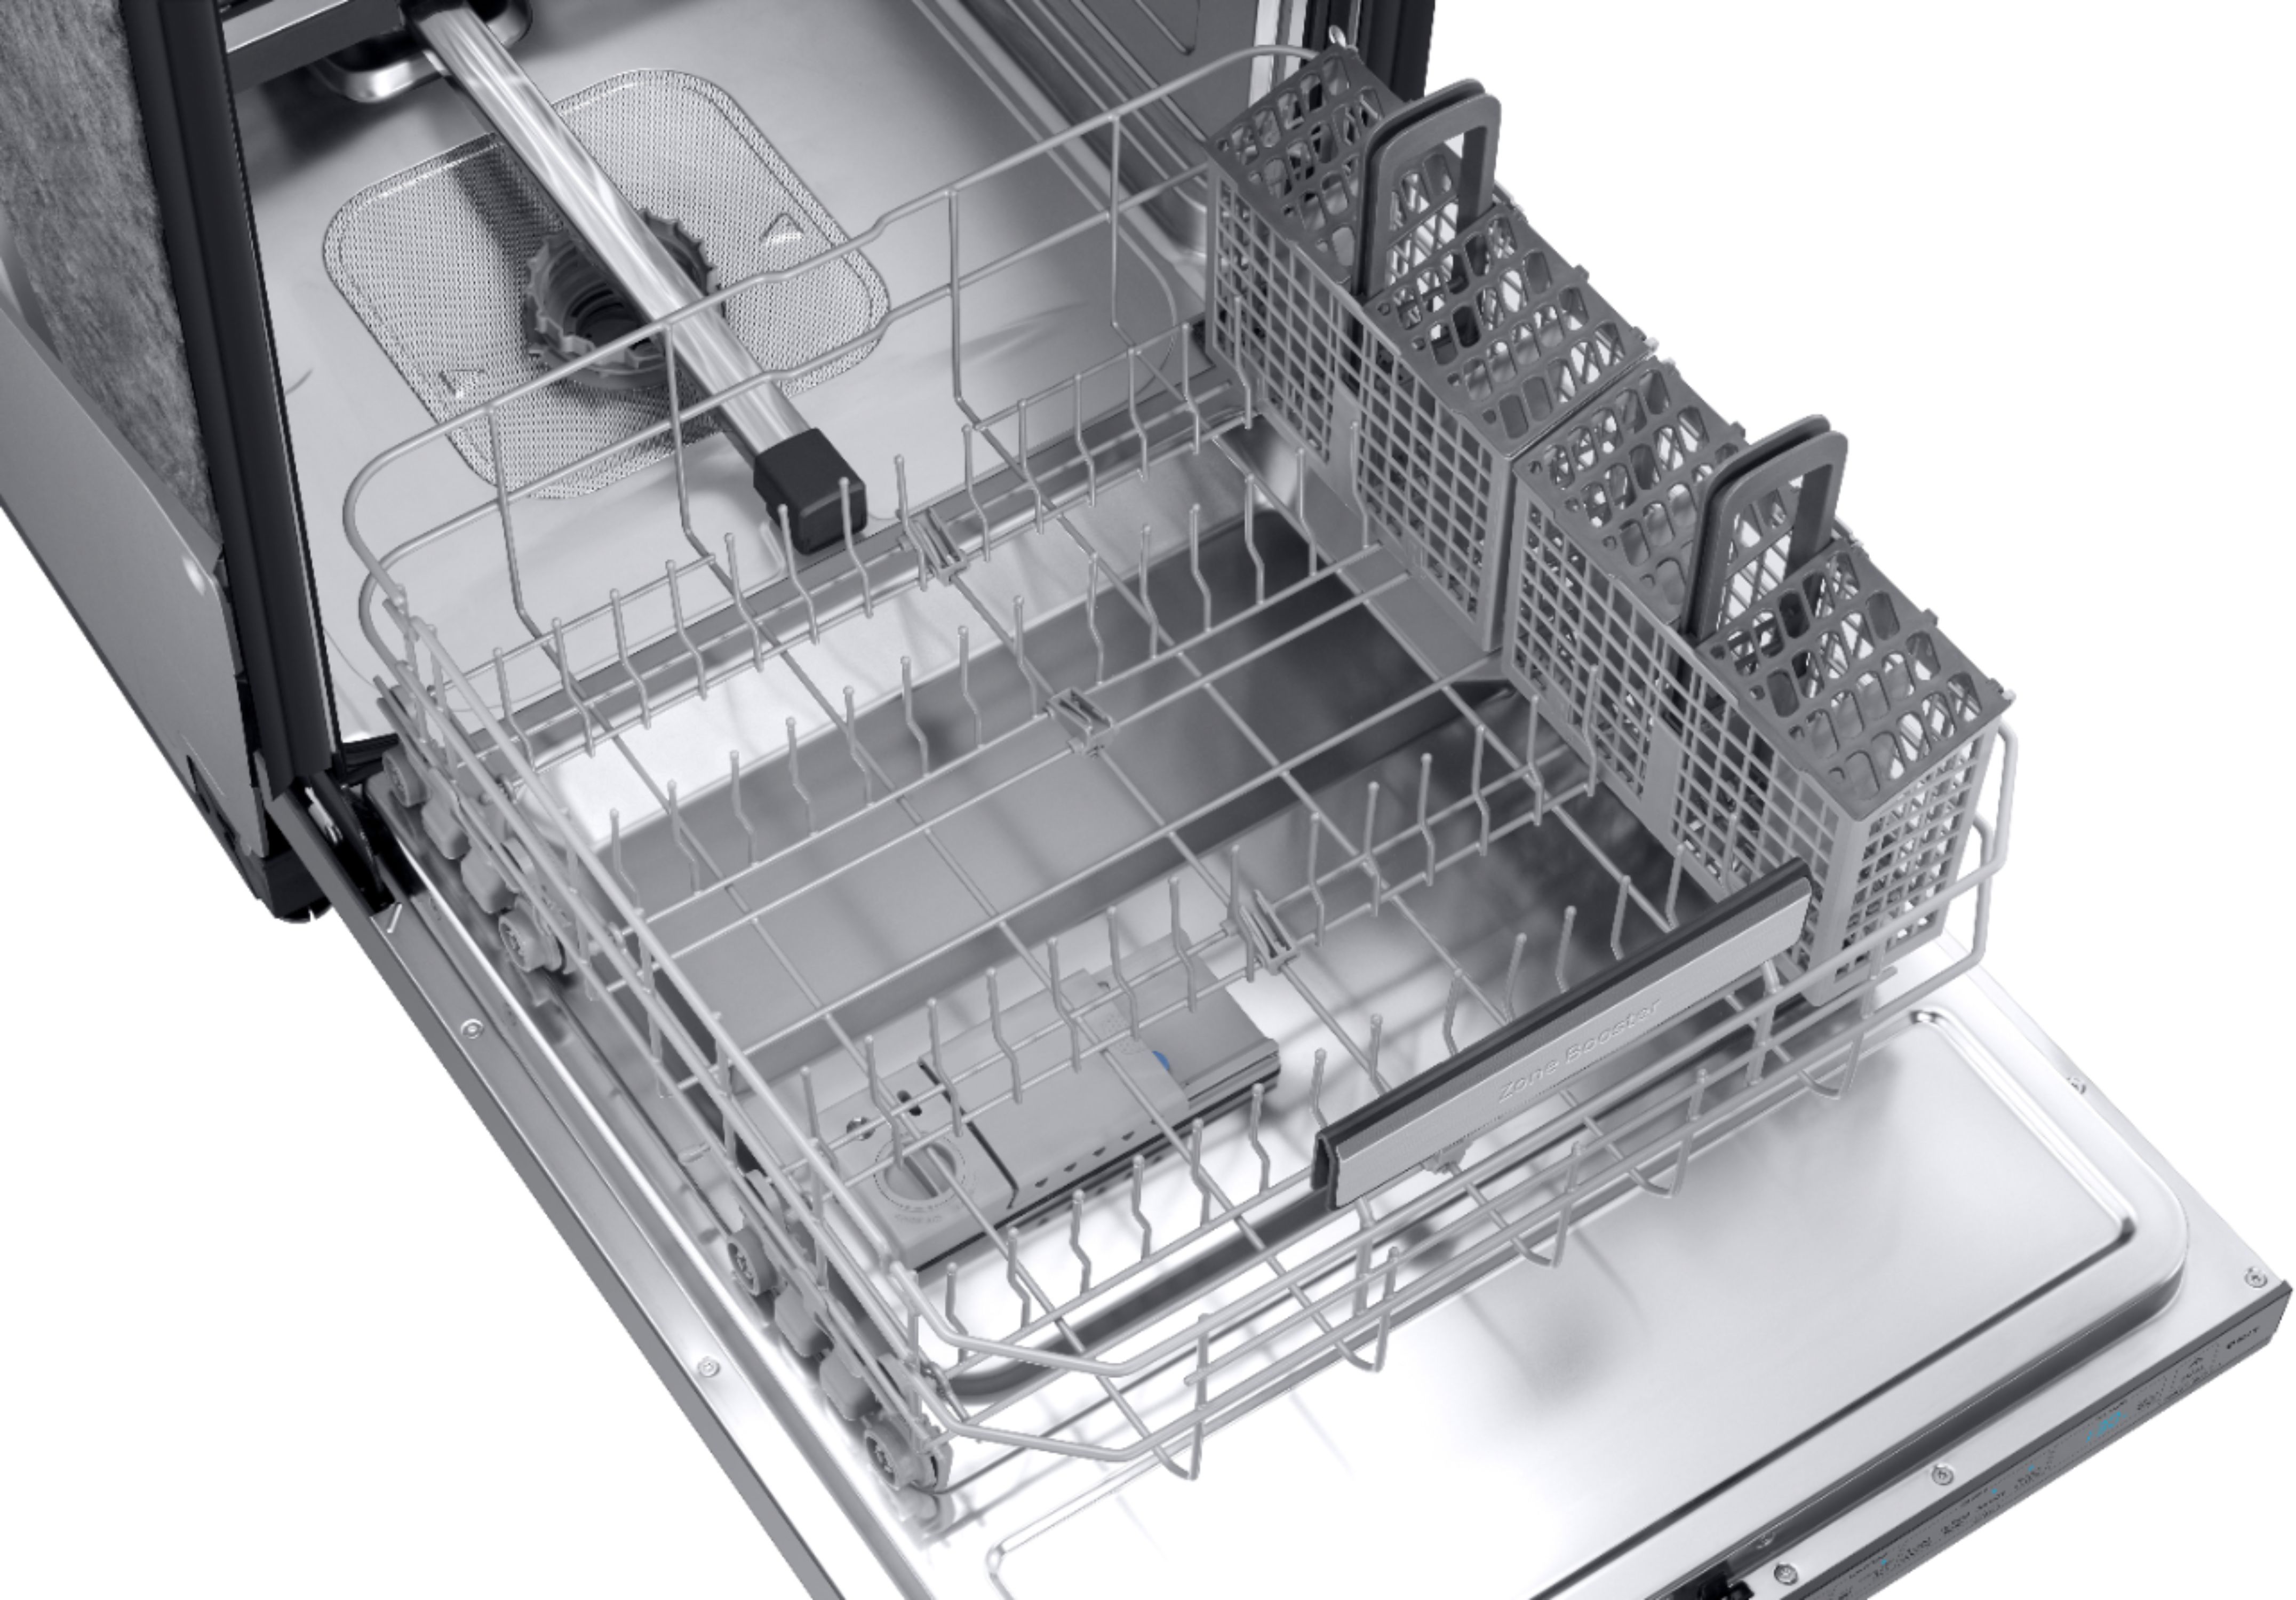 samsung linear dishwasher